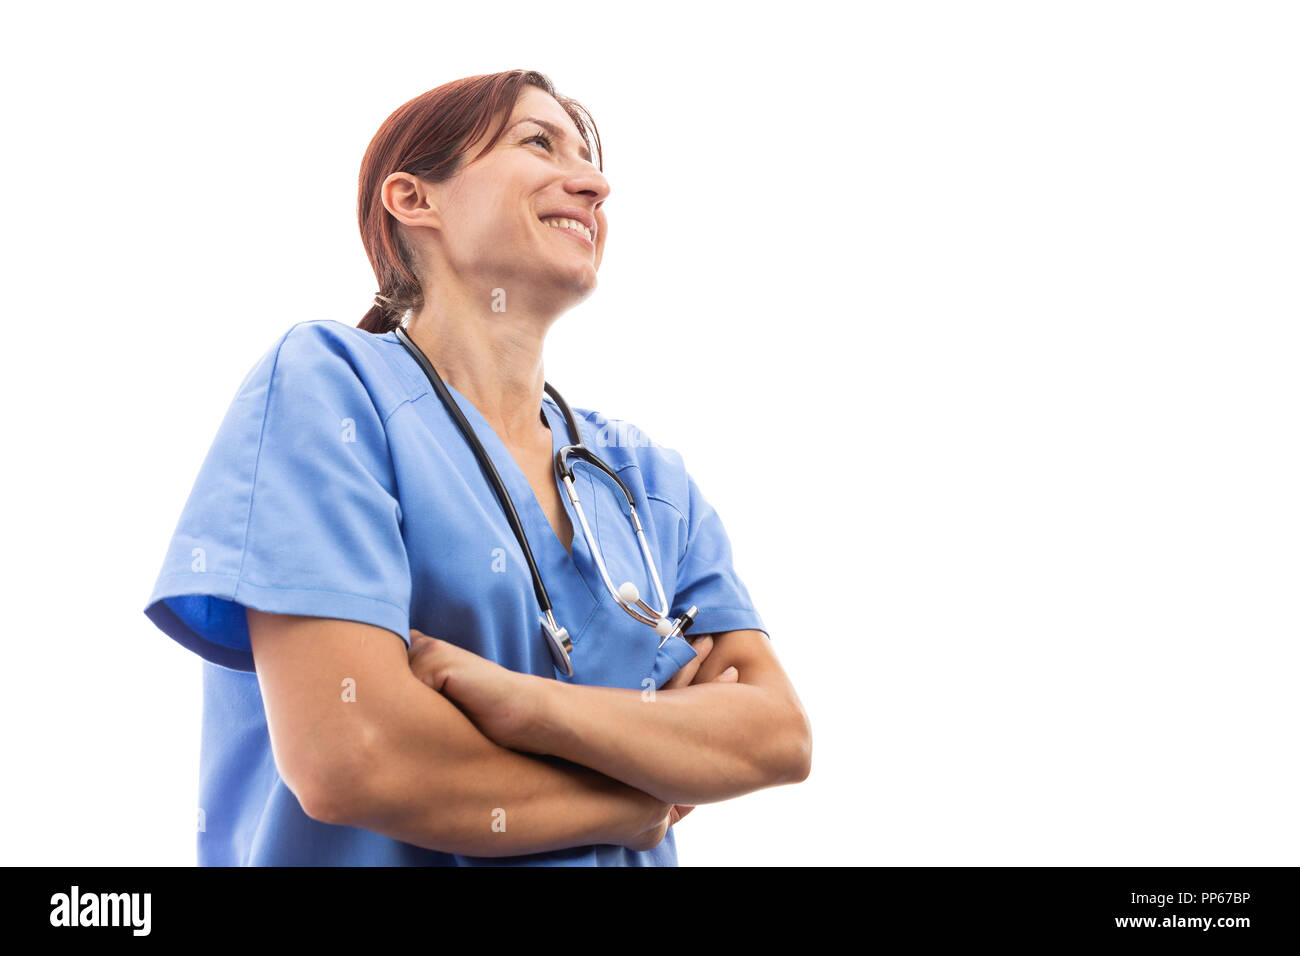 Frau sucht Frau eine Krankenschwester oder der Arzt suchen und lächelnd mit Armen wie schöne fröhliche Krankenhausarbeiter Konzept auf weißem Hintergrund gekreuzt Stockfoto